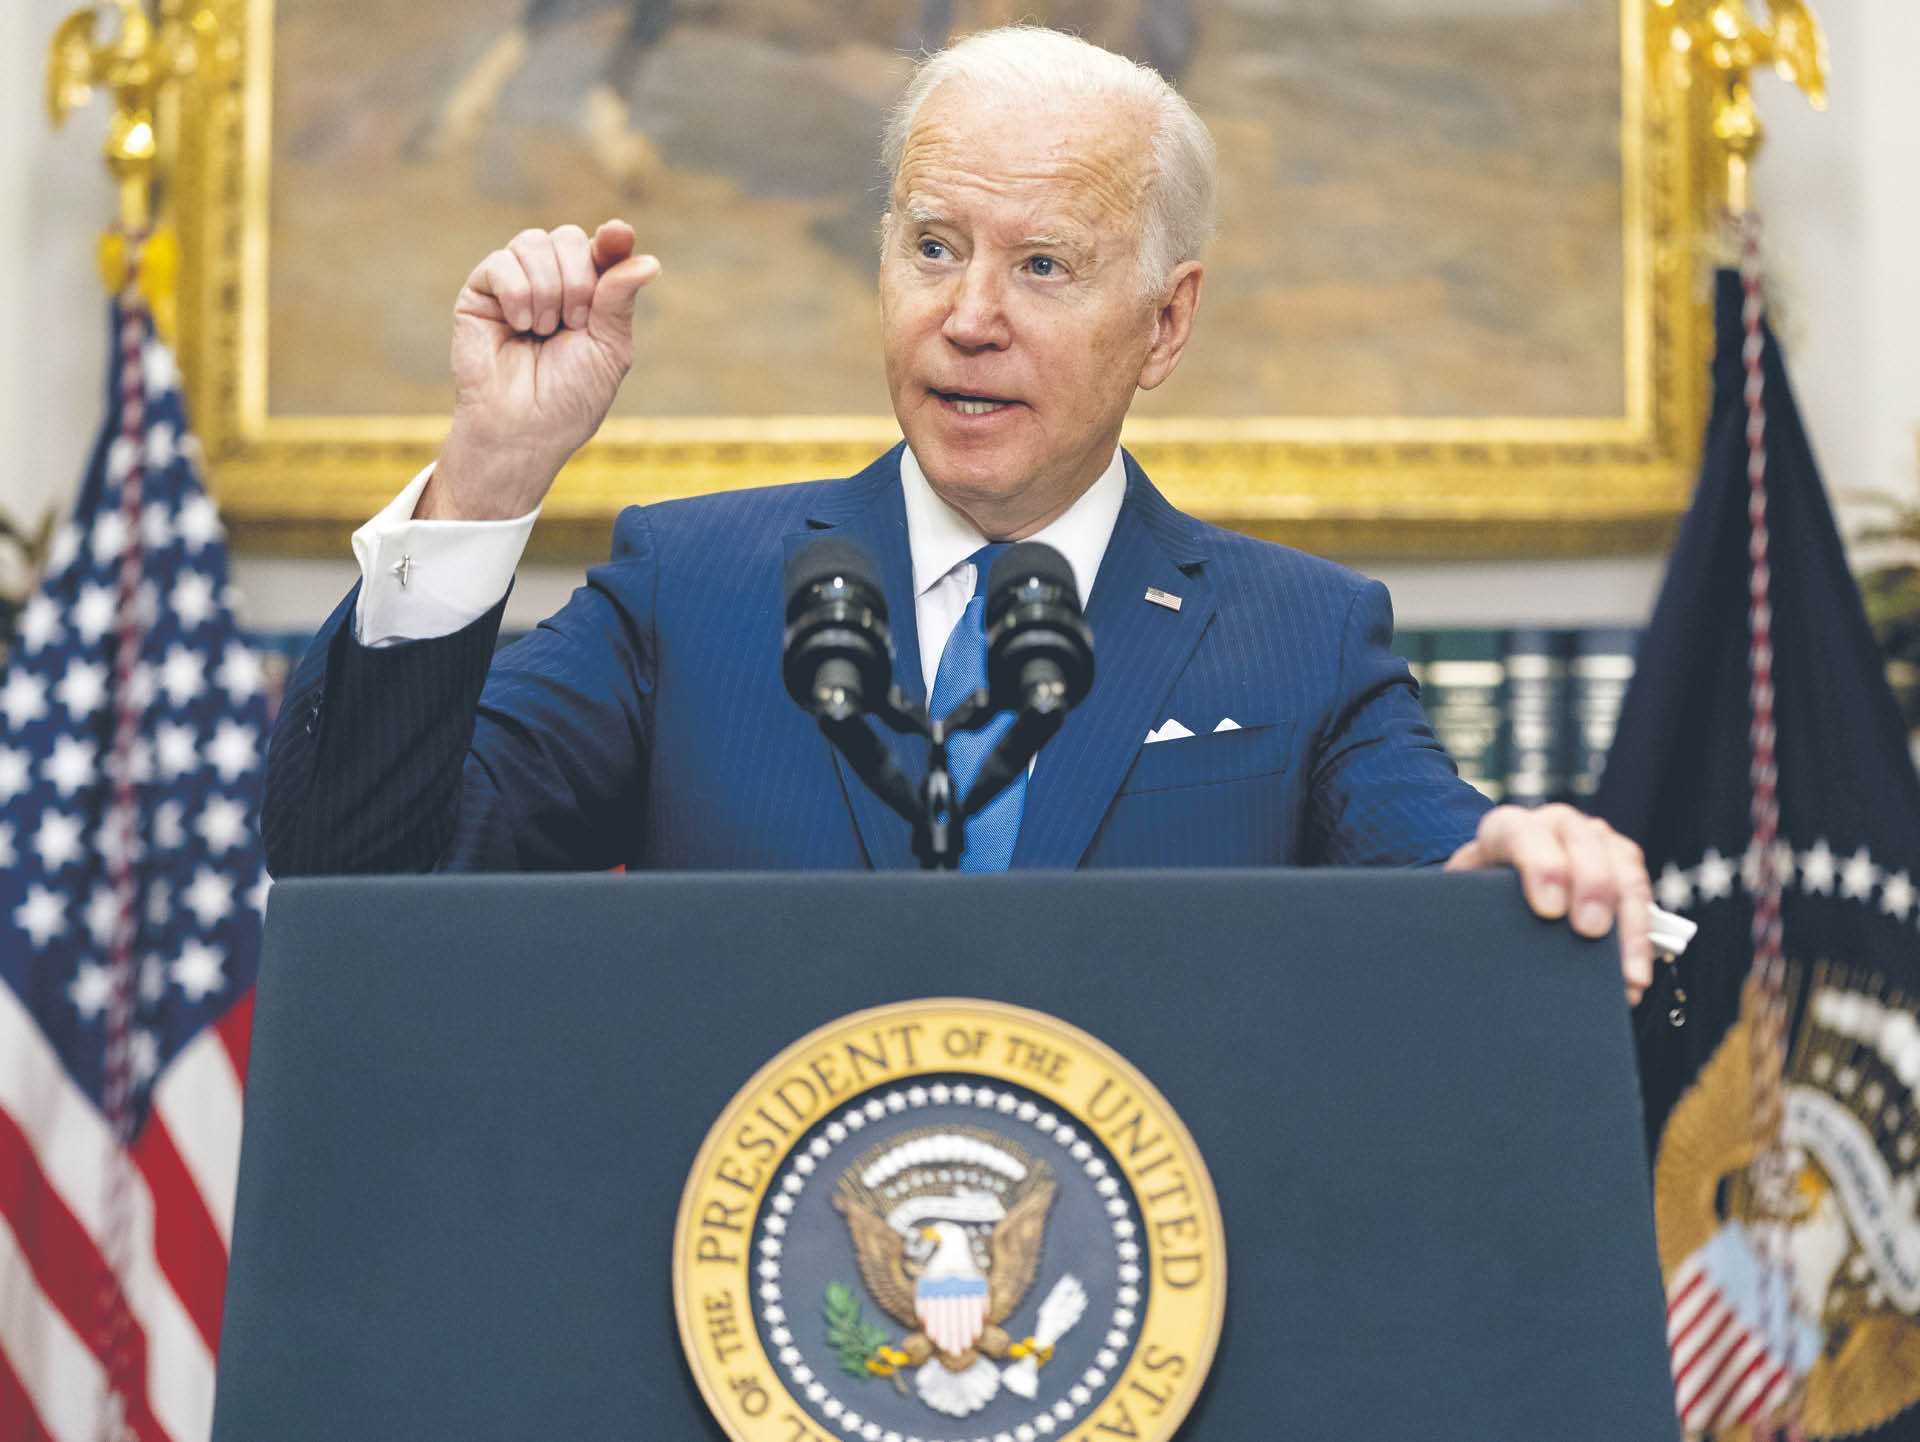 Od początku wojny USA zatwierdziły pakiety wsparcia dla Ukrainy o wartości ponad 50 mld dol. Na zdj. prezydent Joe Biden